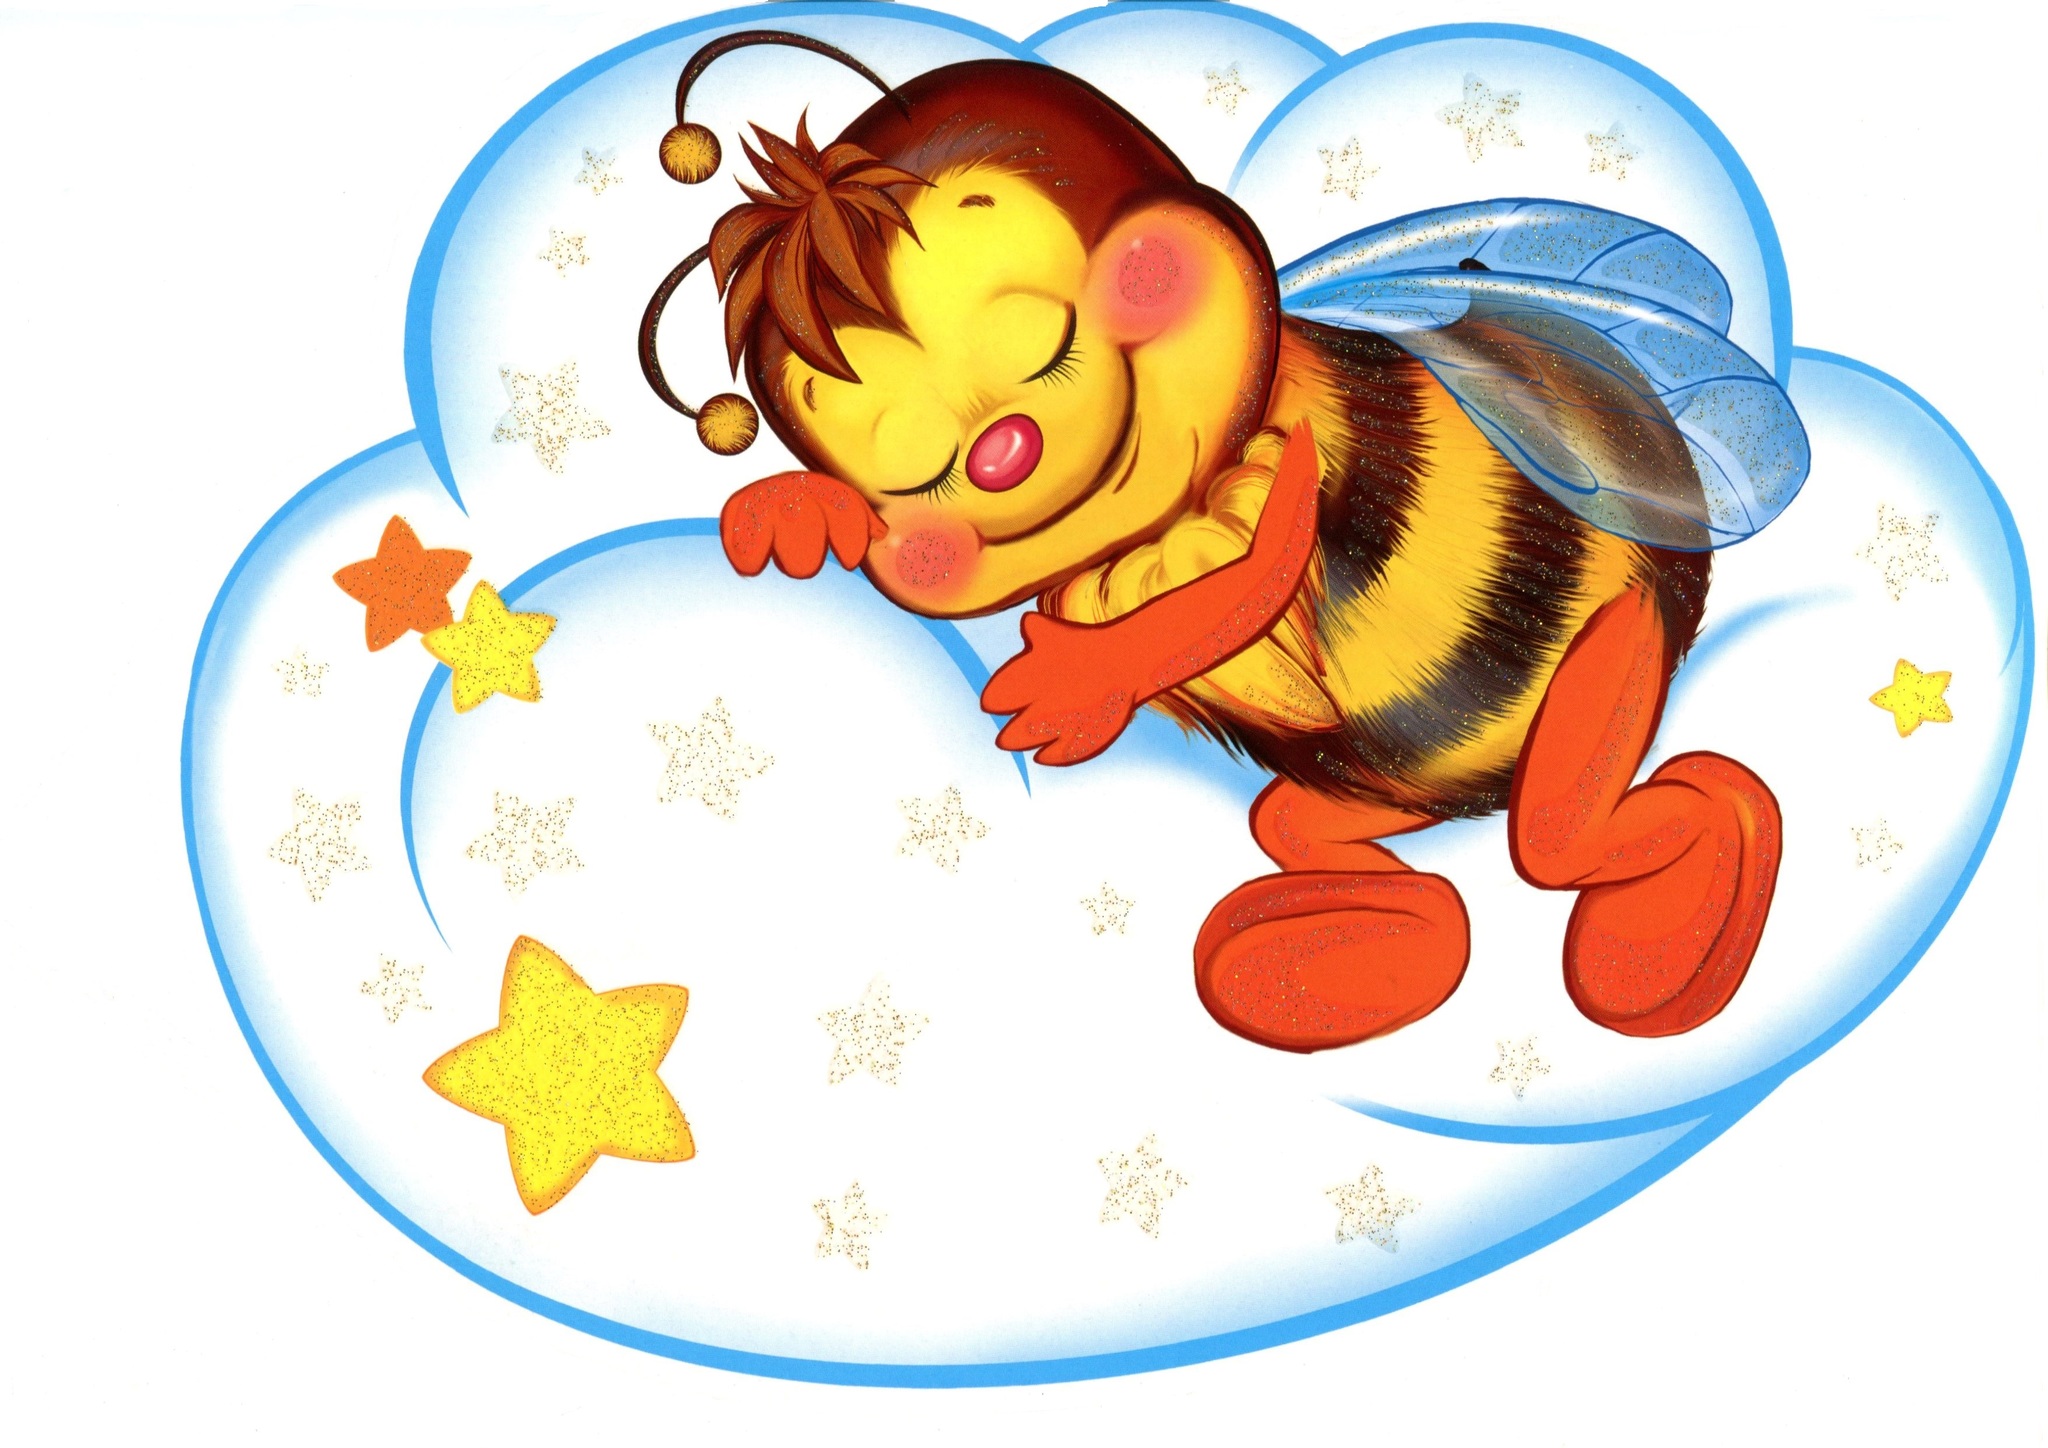 Спящие герои сказок. Пчелы для детского сада. Детский сад Пчелка. Светлячок картинка для детского сада. Пчелы для украшения детского сада.